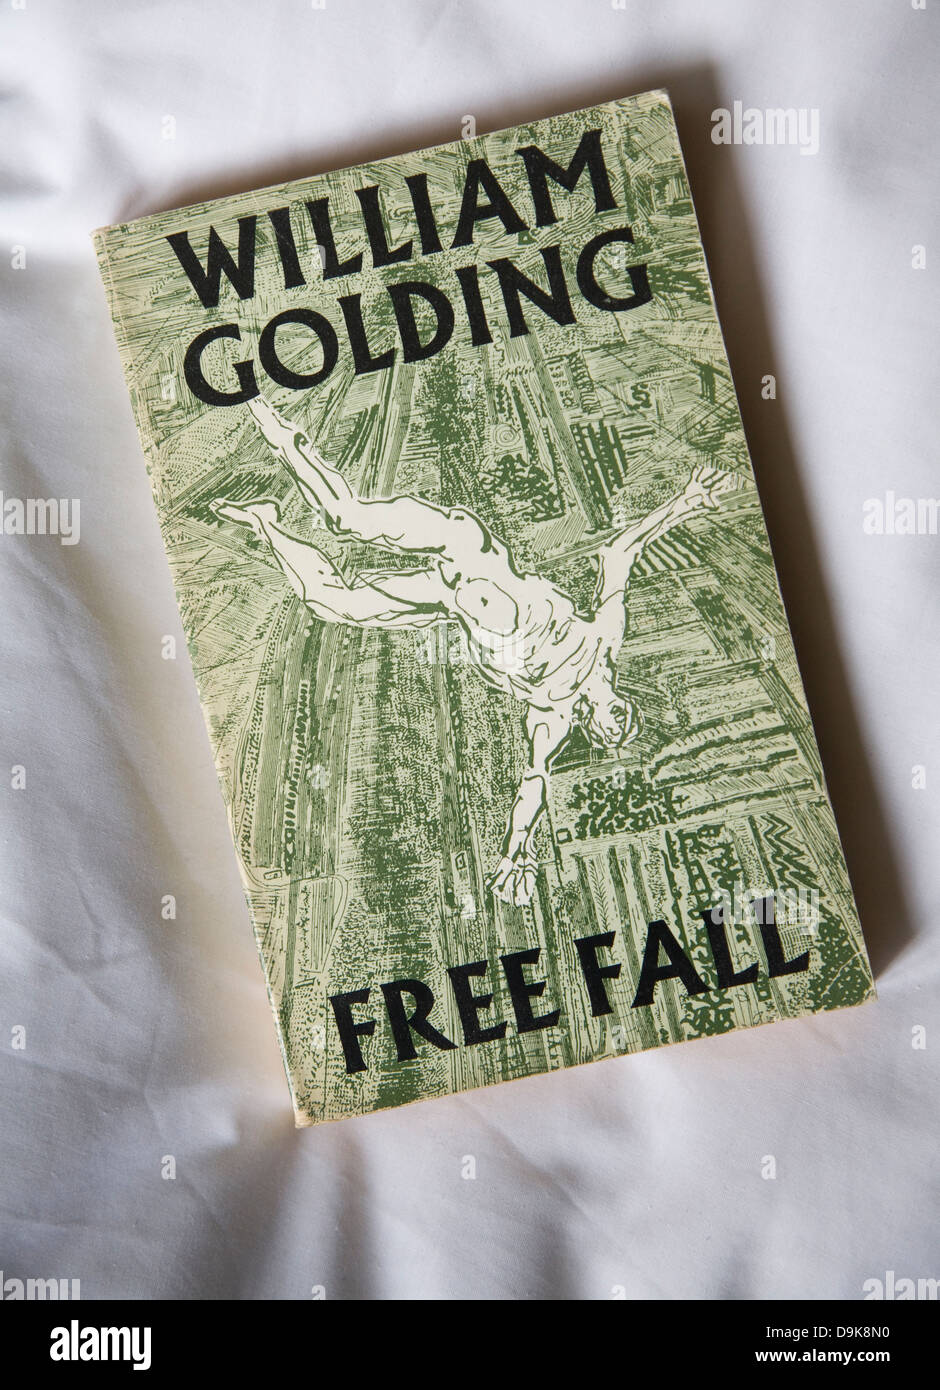 William Golding Faber Chute Libre edition dessin de couverture de livre par Anthony Goss Banque D'Images